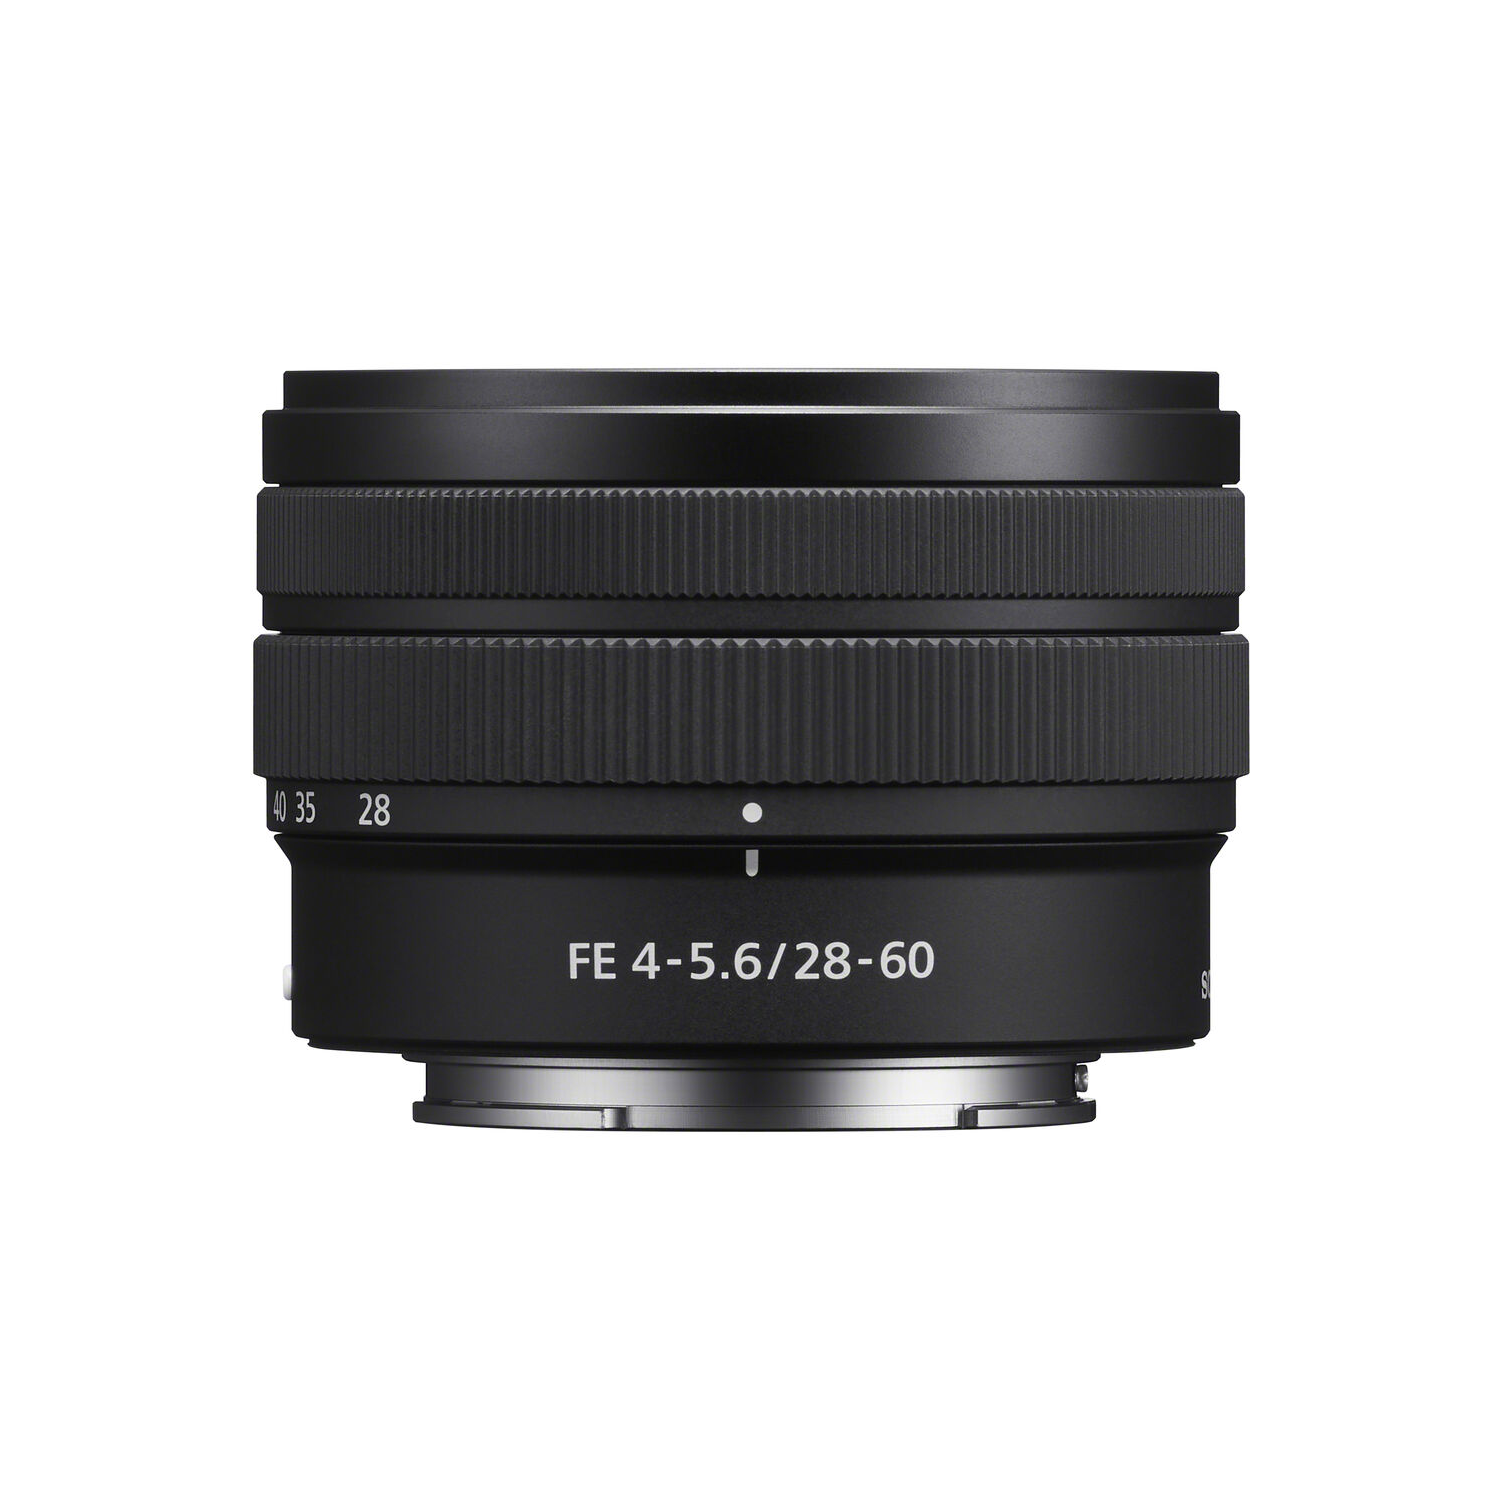 Sony FE 28-60mm F4-5.6 Full-frame Compact Zoom Lens